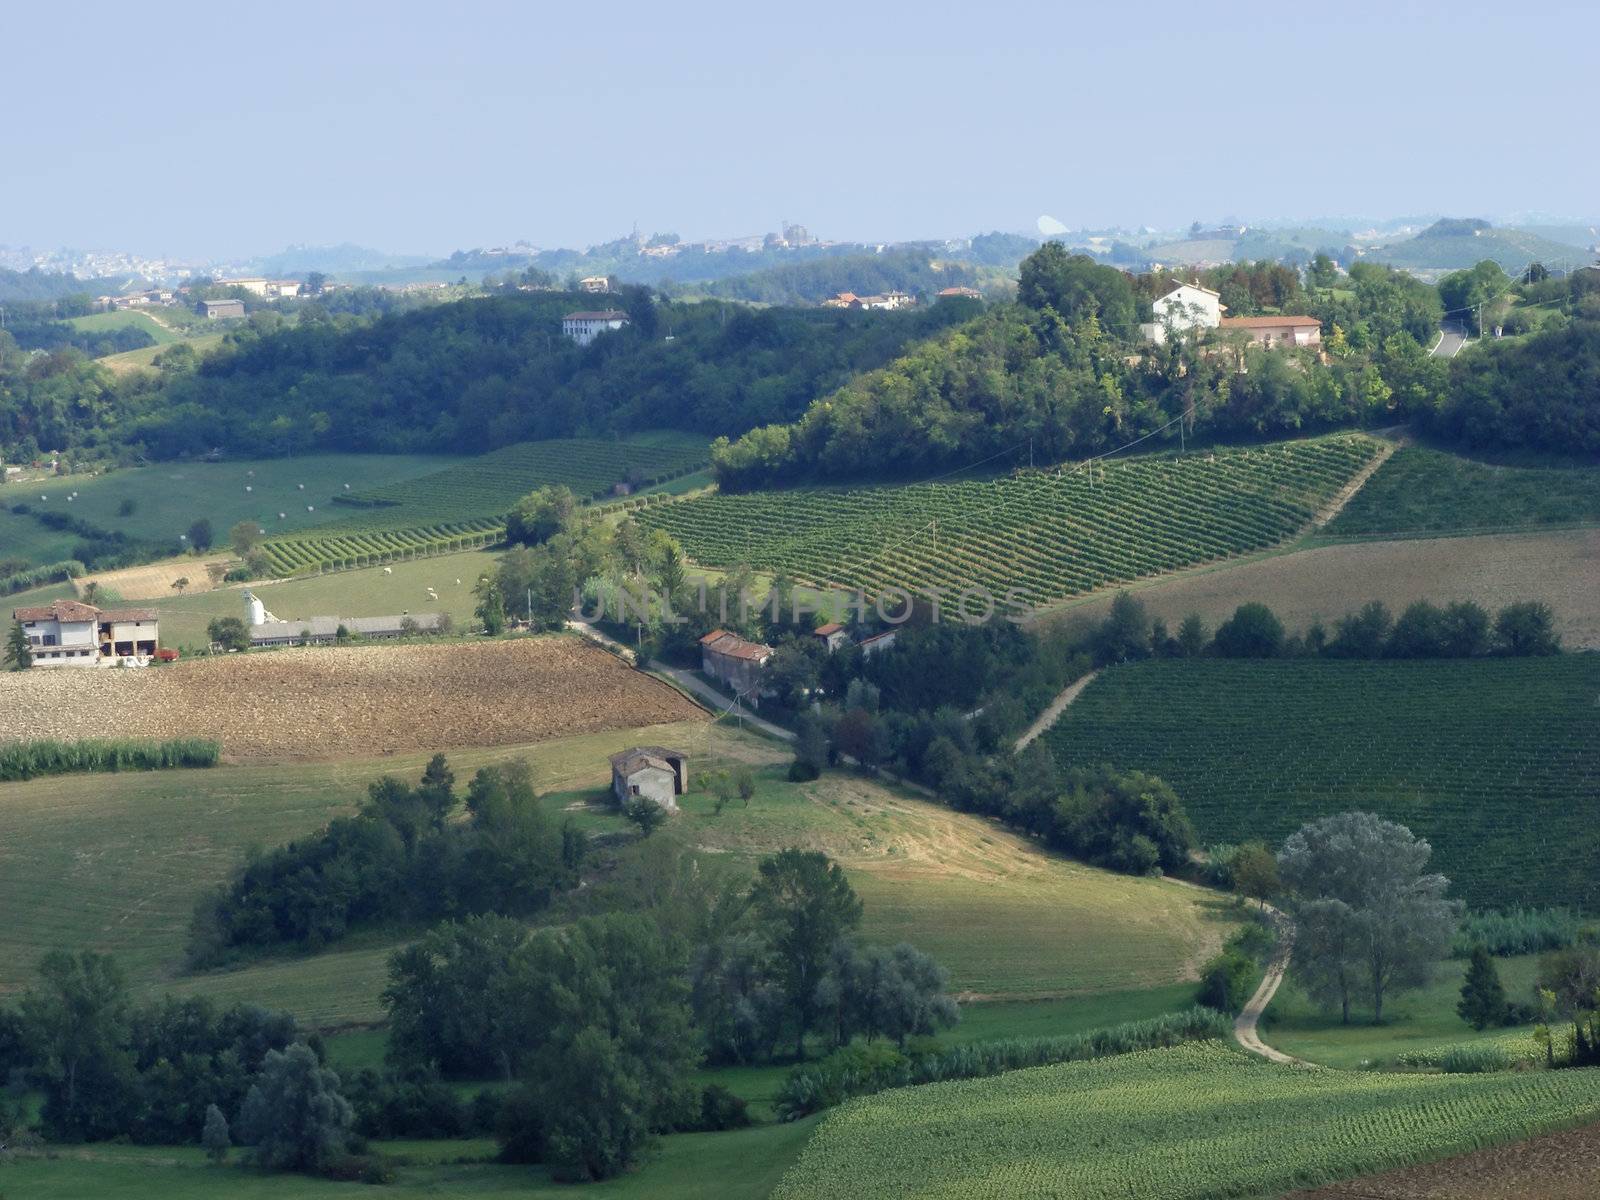 Landscape of green hills, vines and blue sky